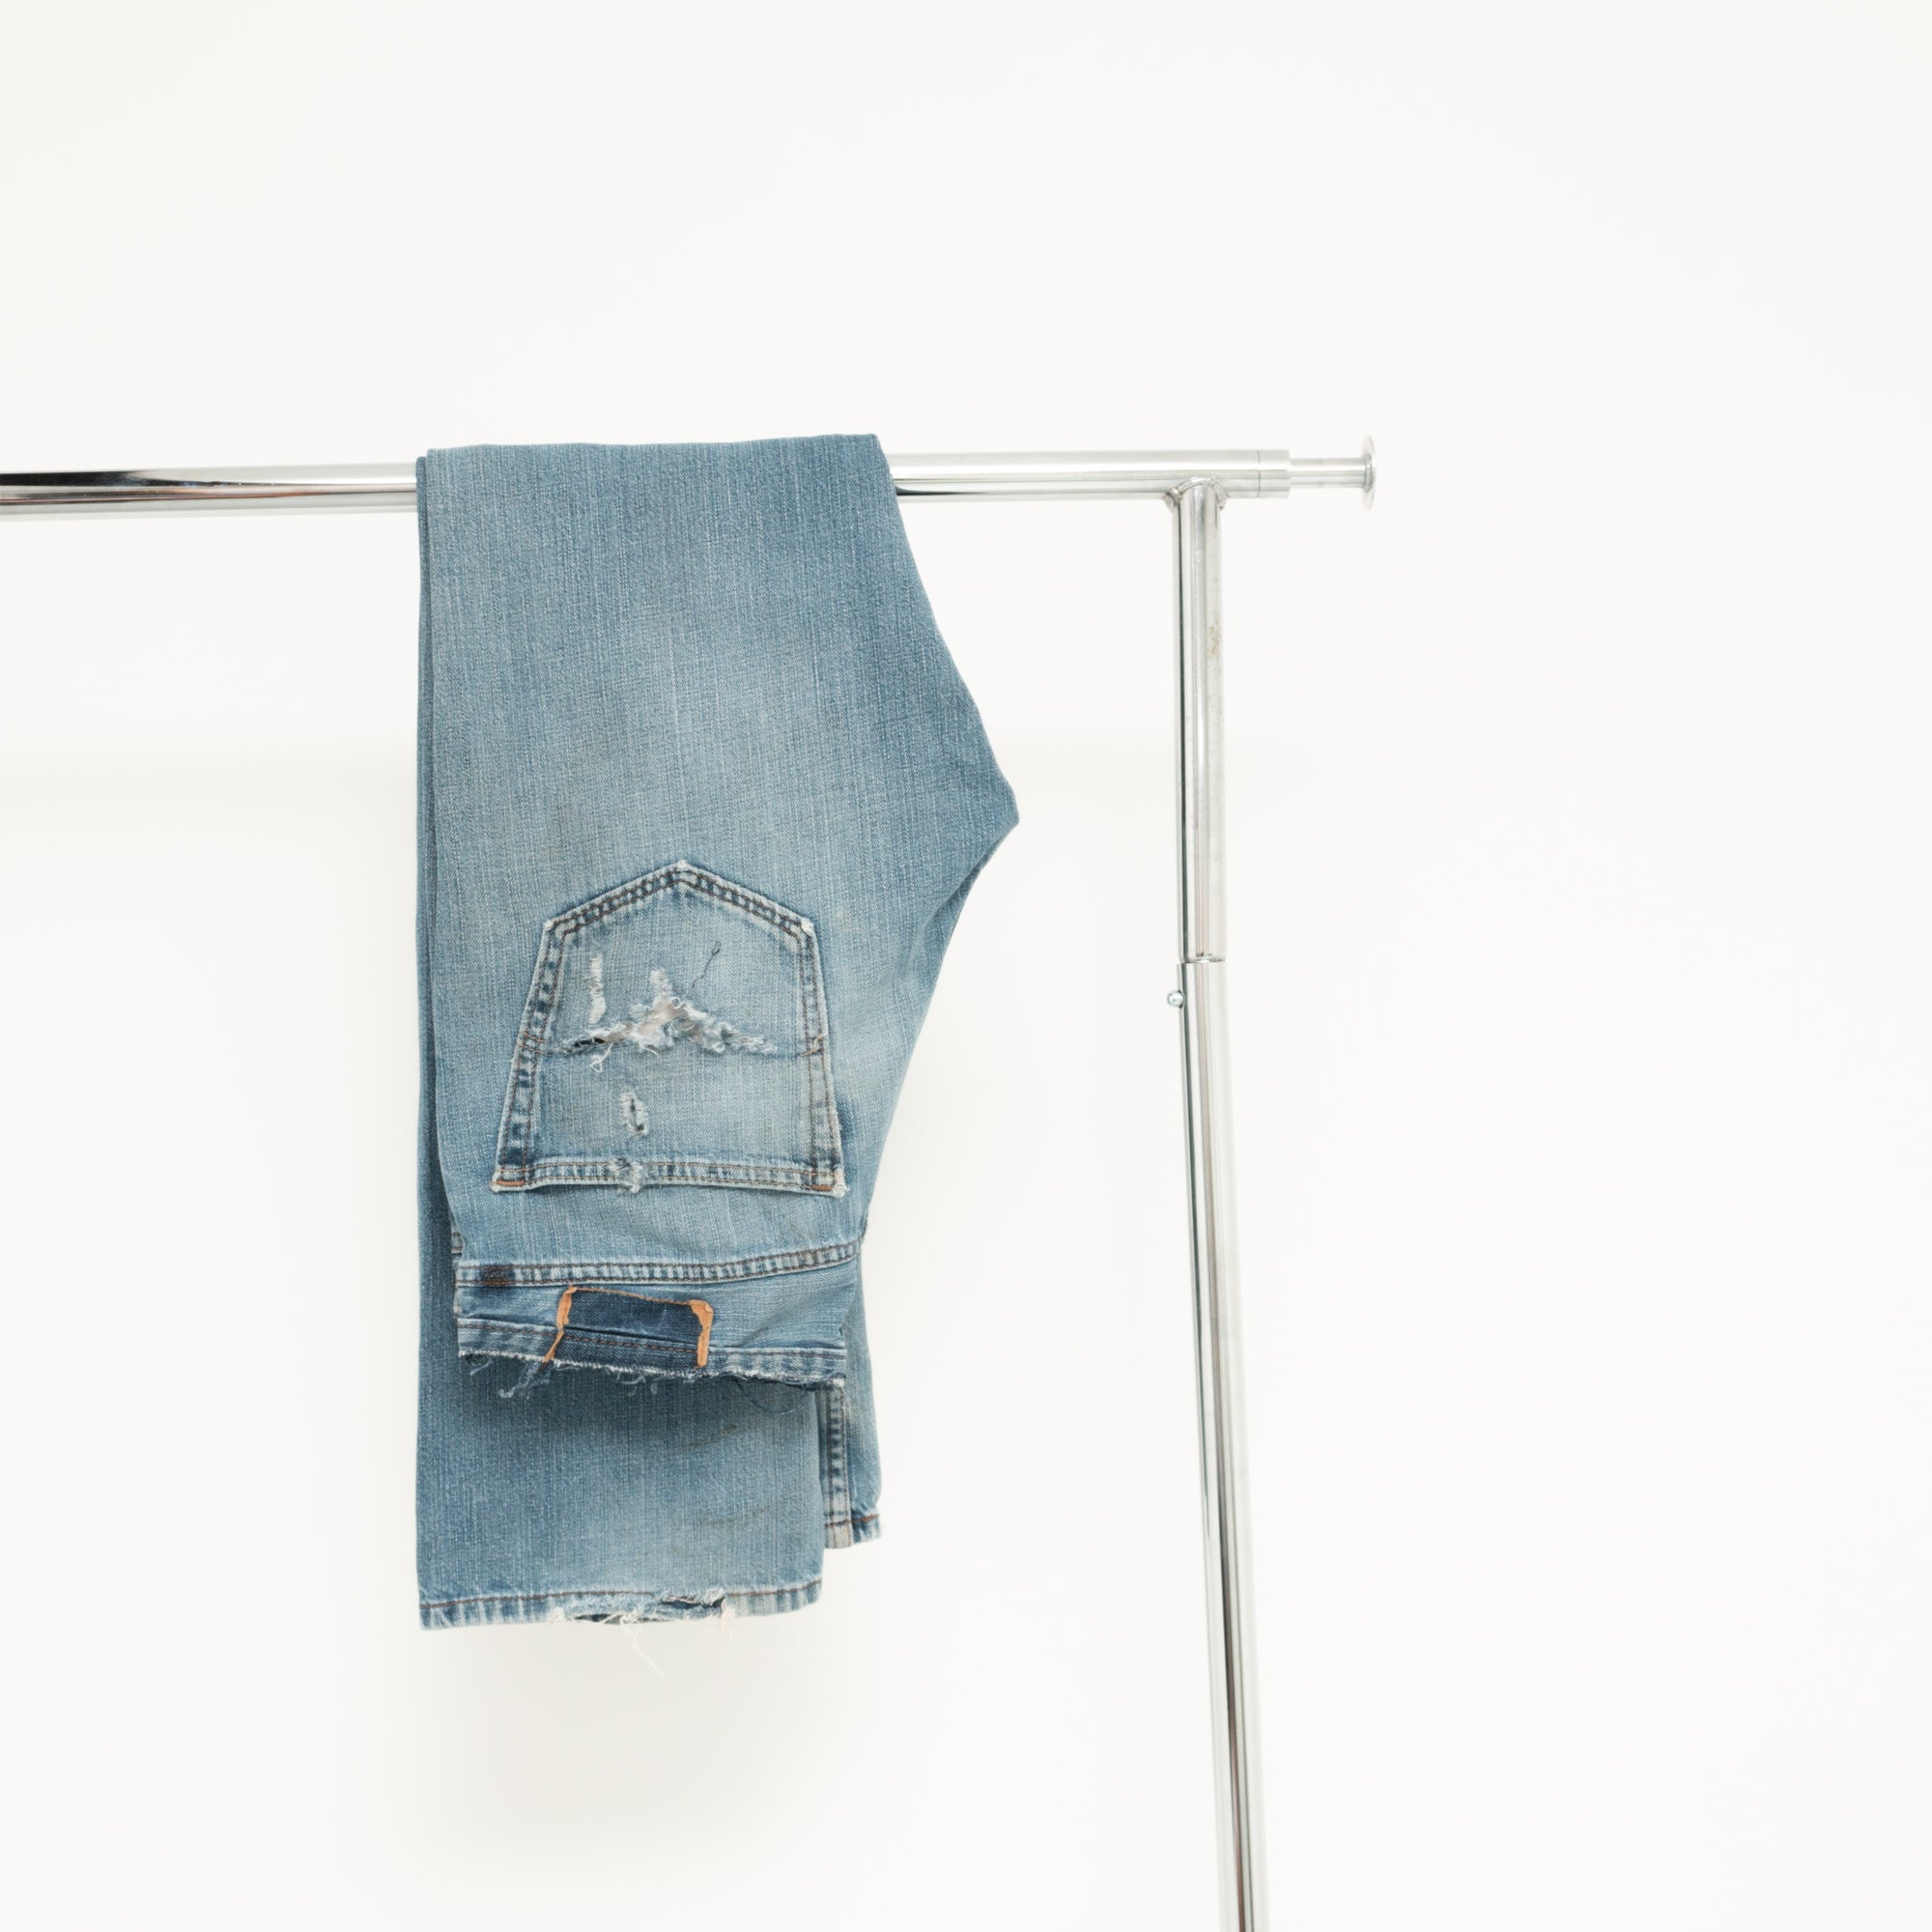 "DISTRESSED" Jeans W33 L33